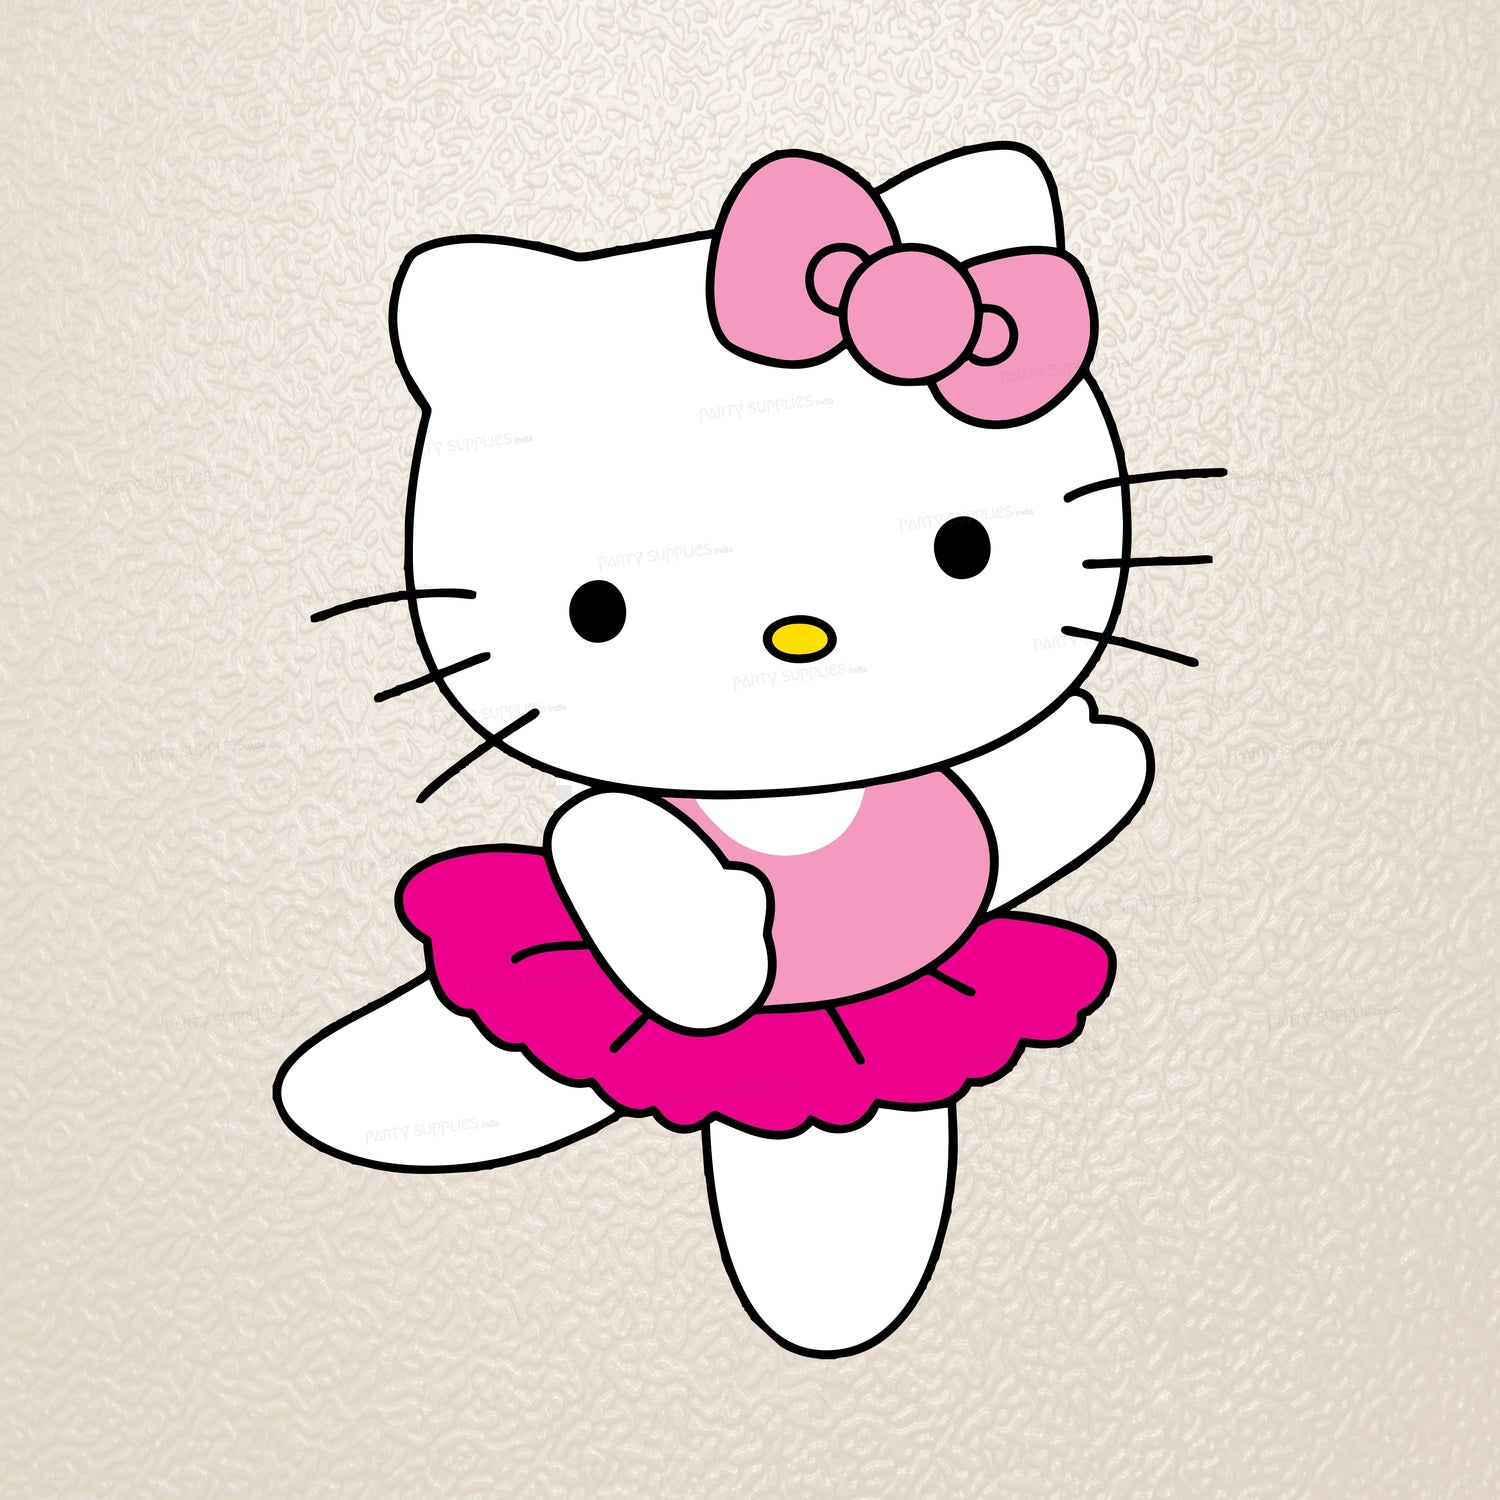 PSI Hello Kitty Theme Cutout - 04